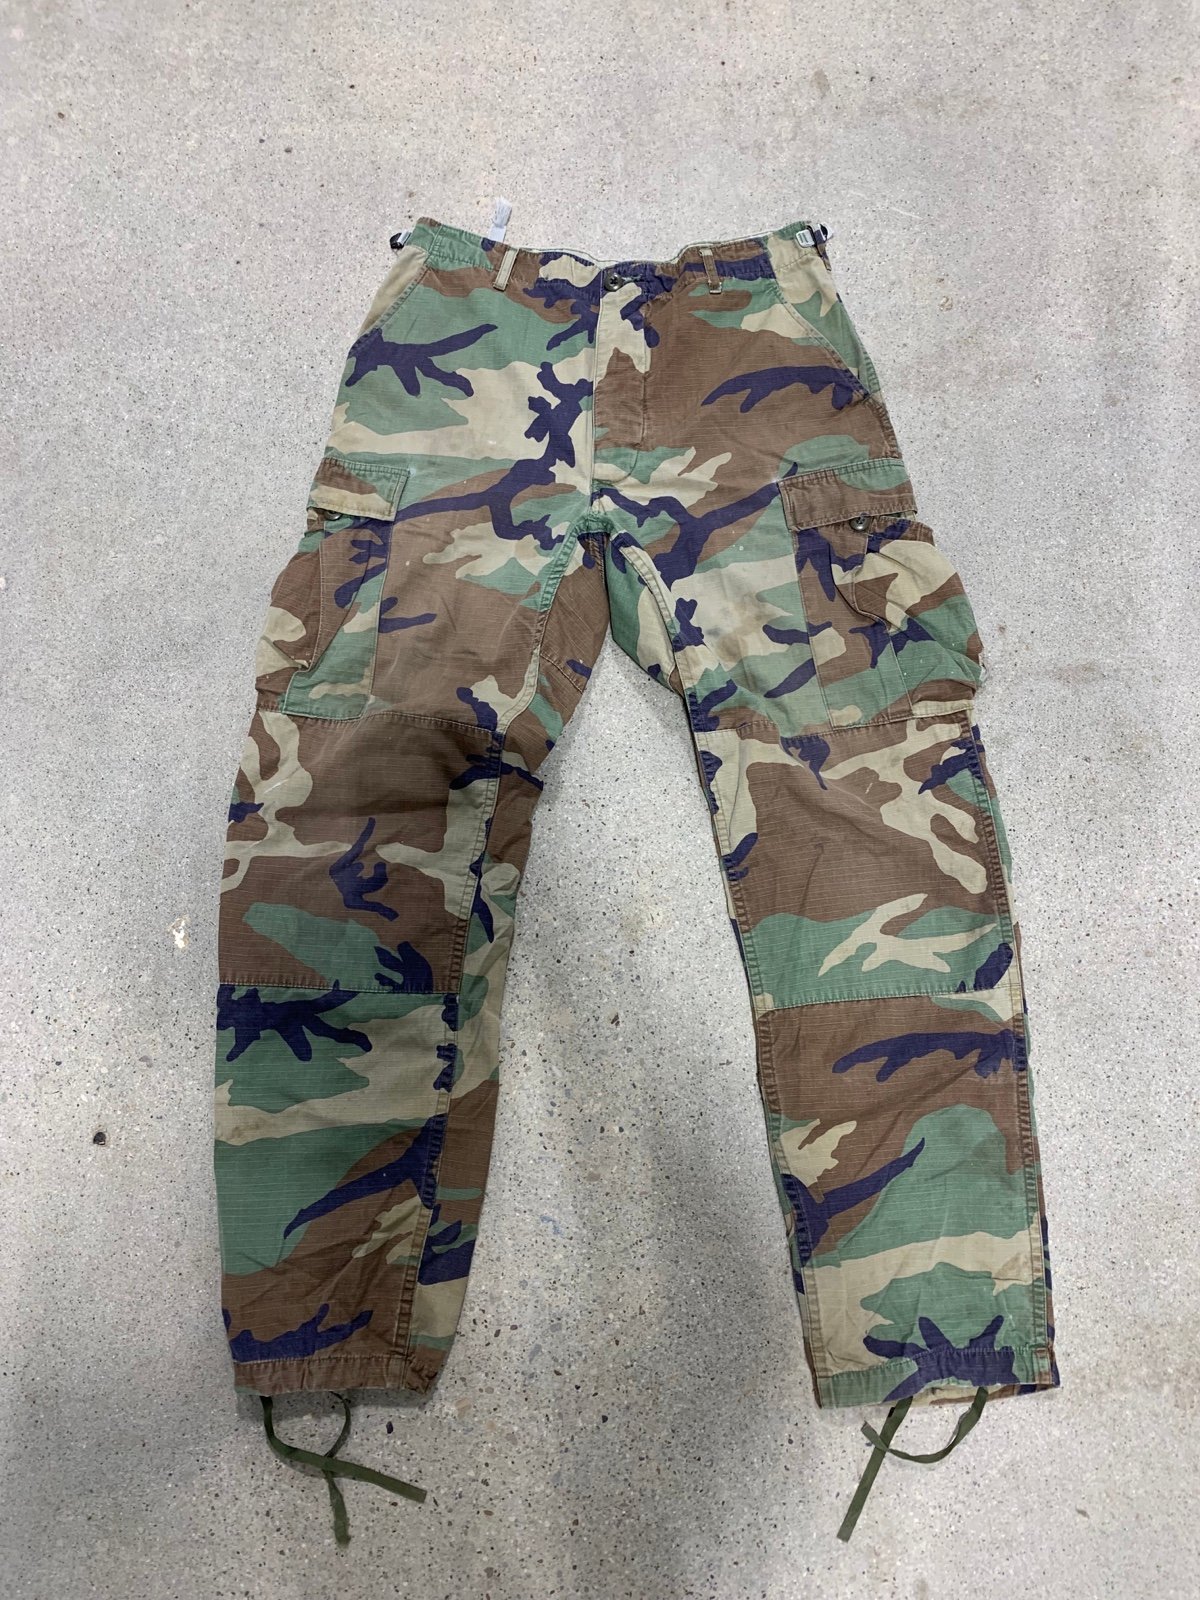 Discounted mens camo pants Mcx1QBKLz for sale